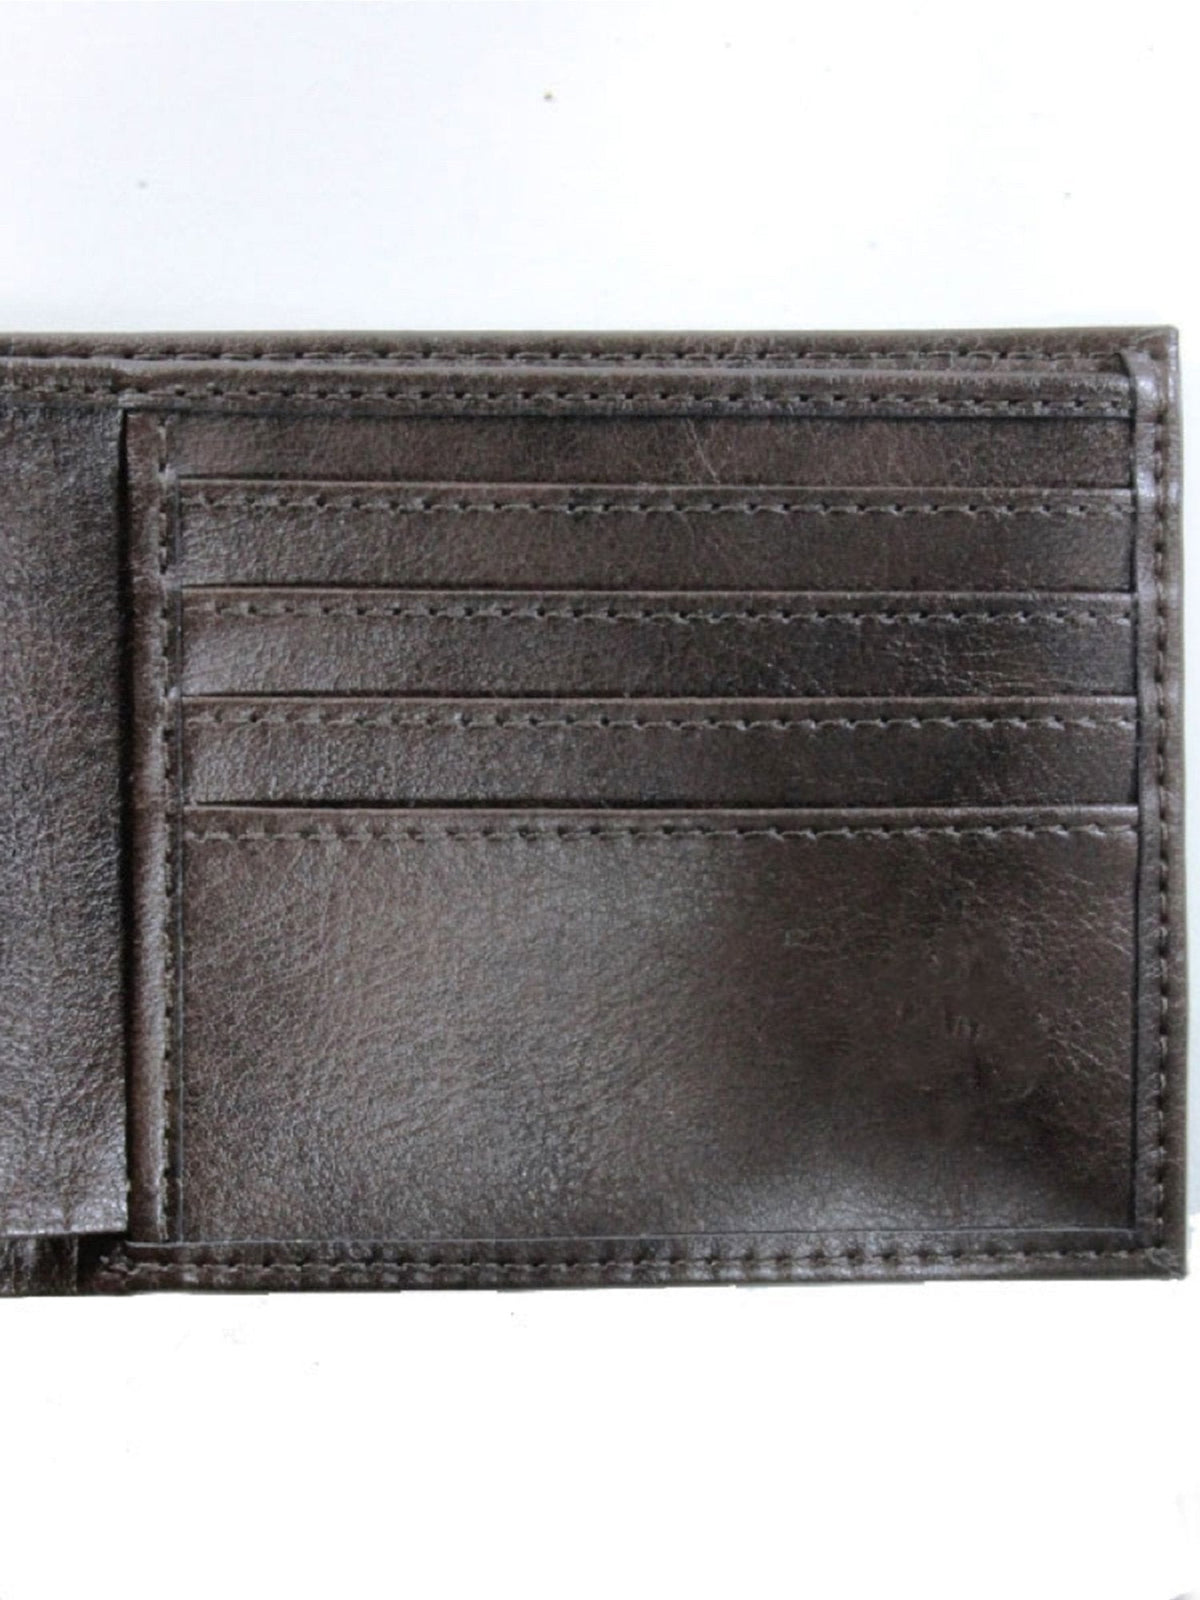 Billfold wallet